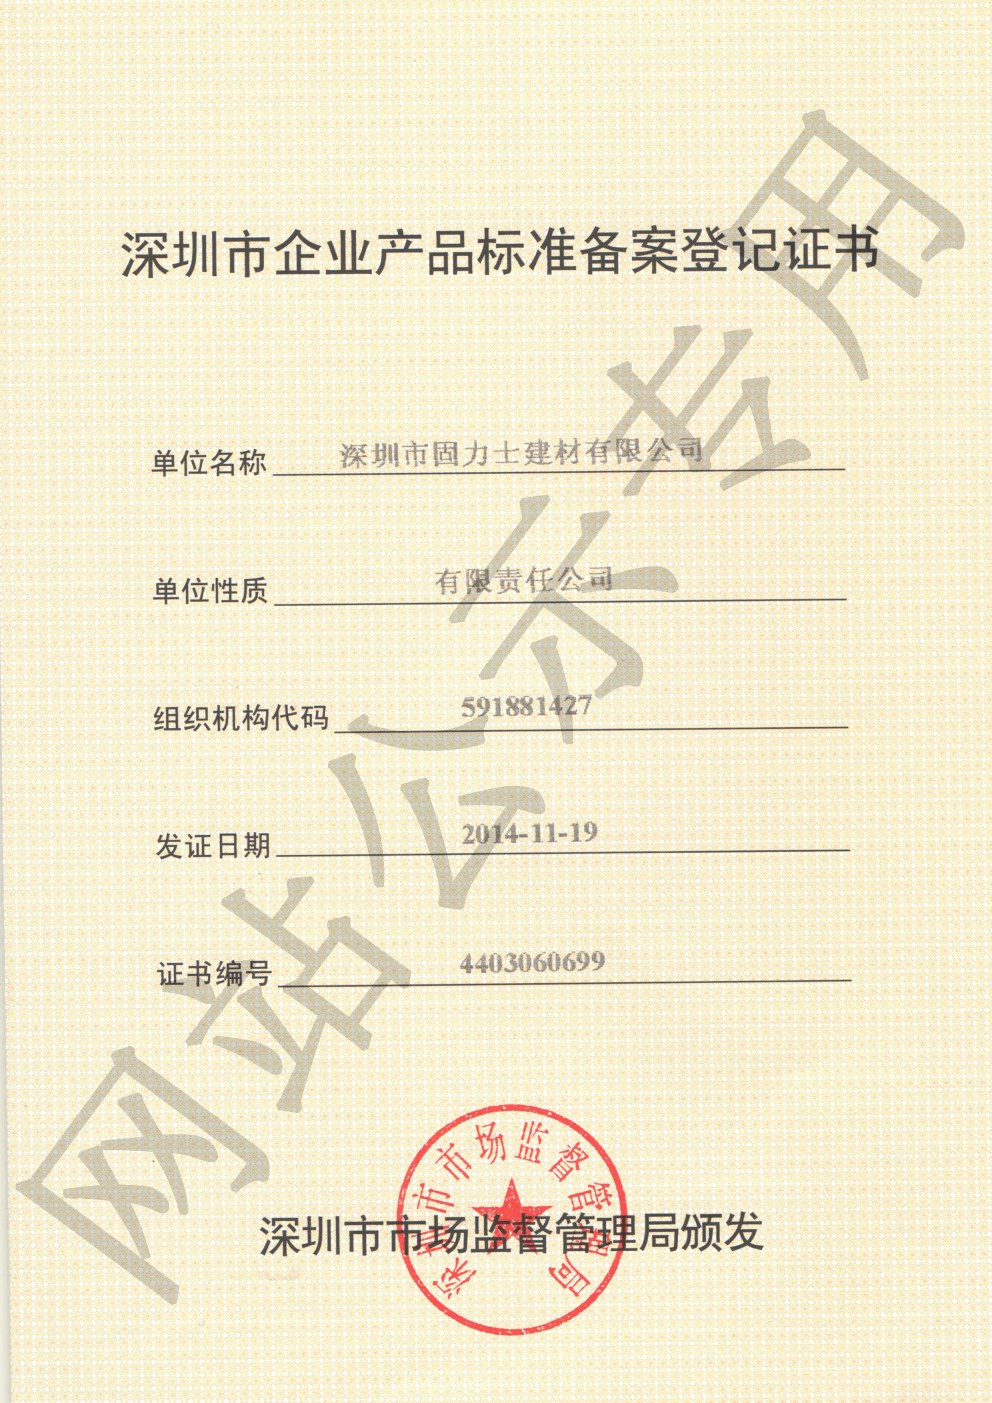 莱芜企业产品标准登记证书